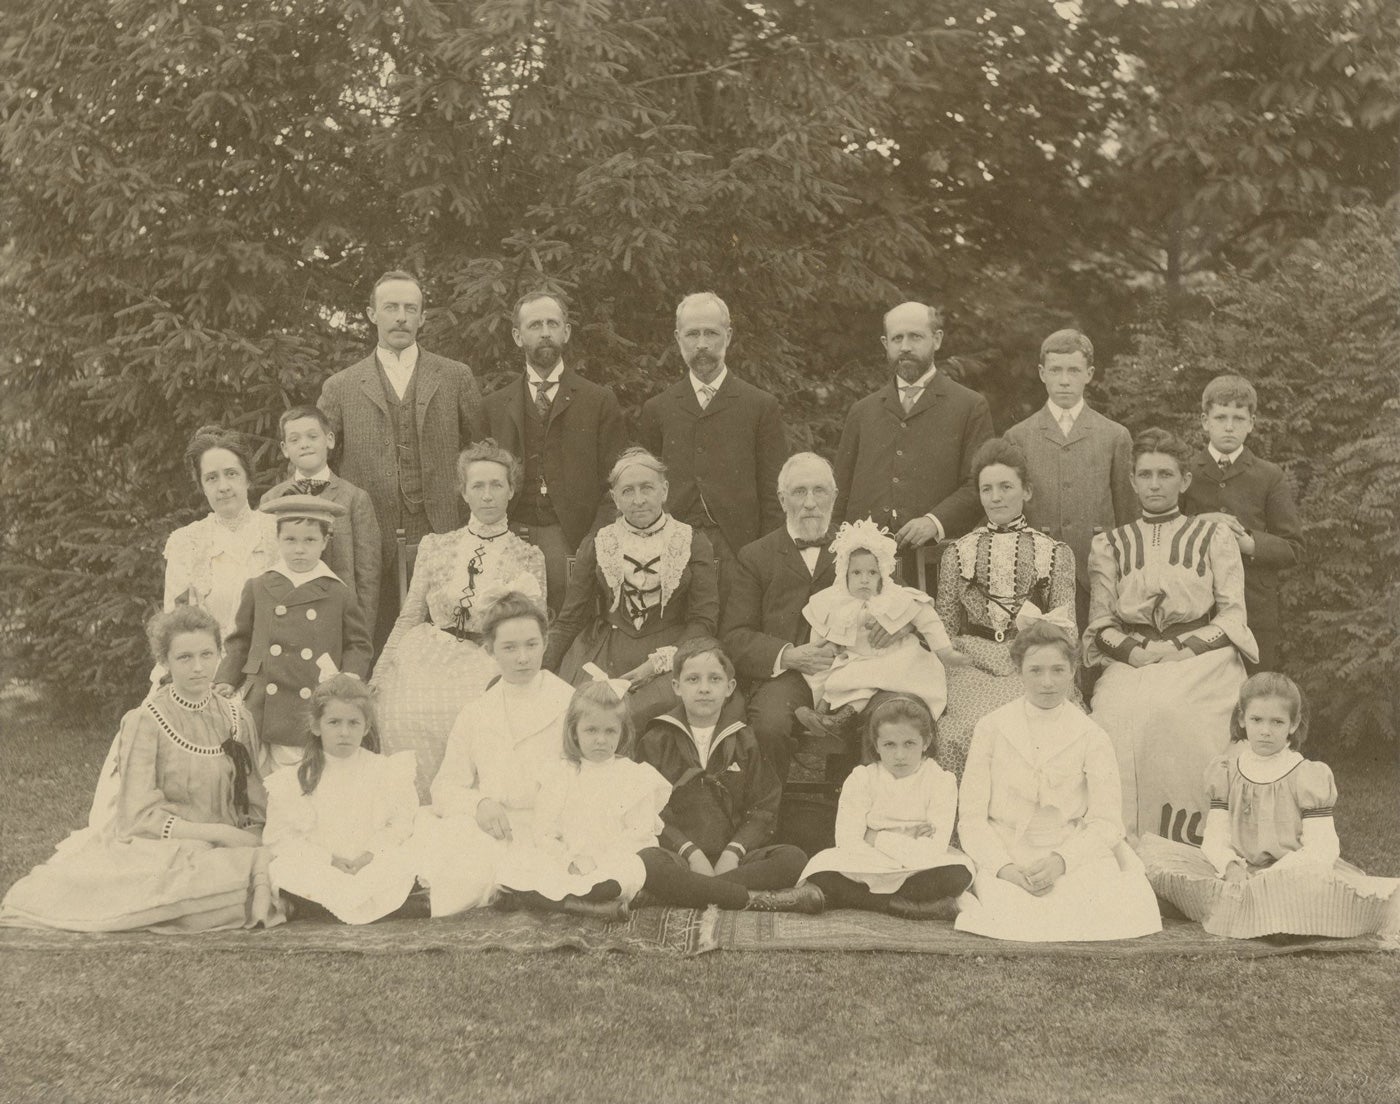 Gest family portrait, 1902